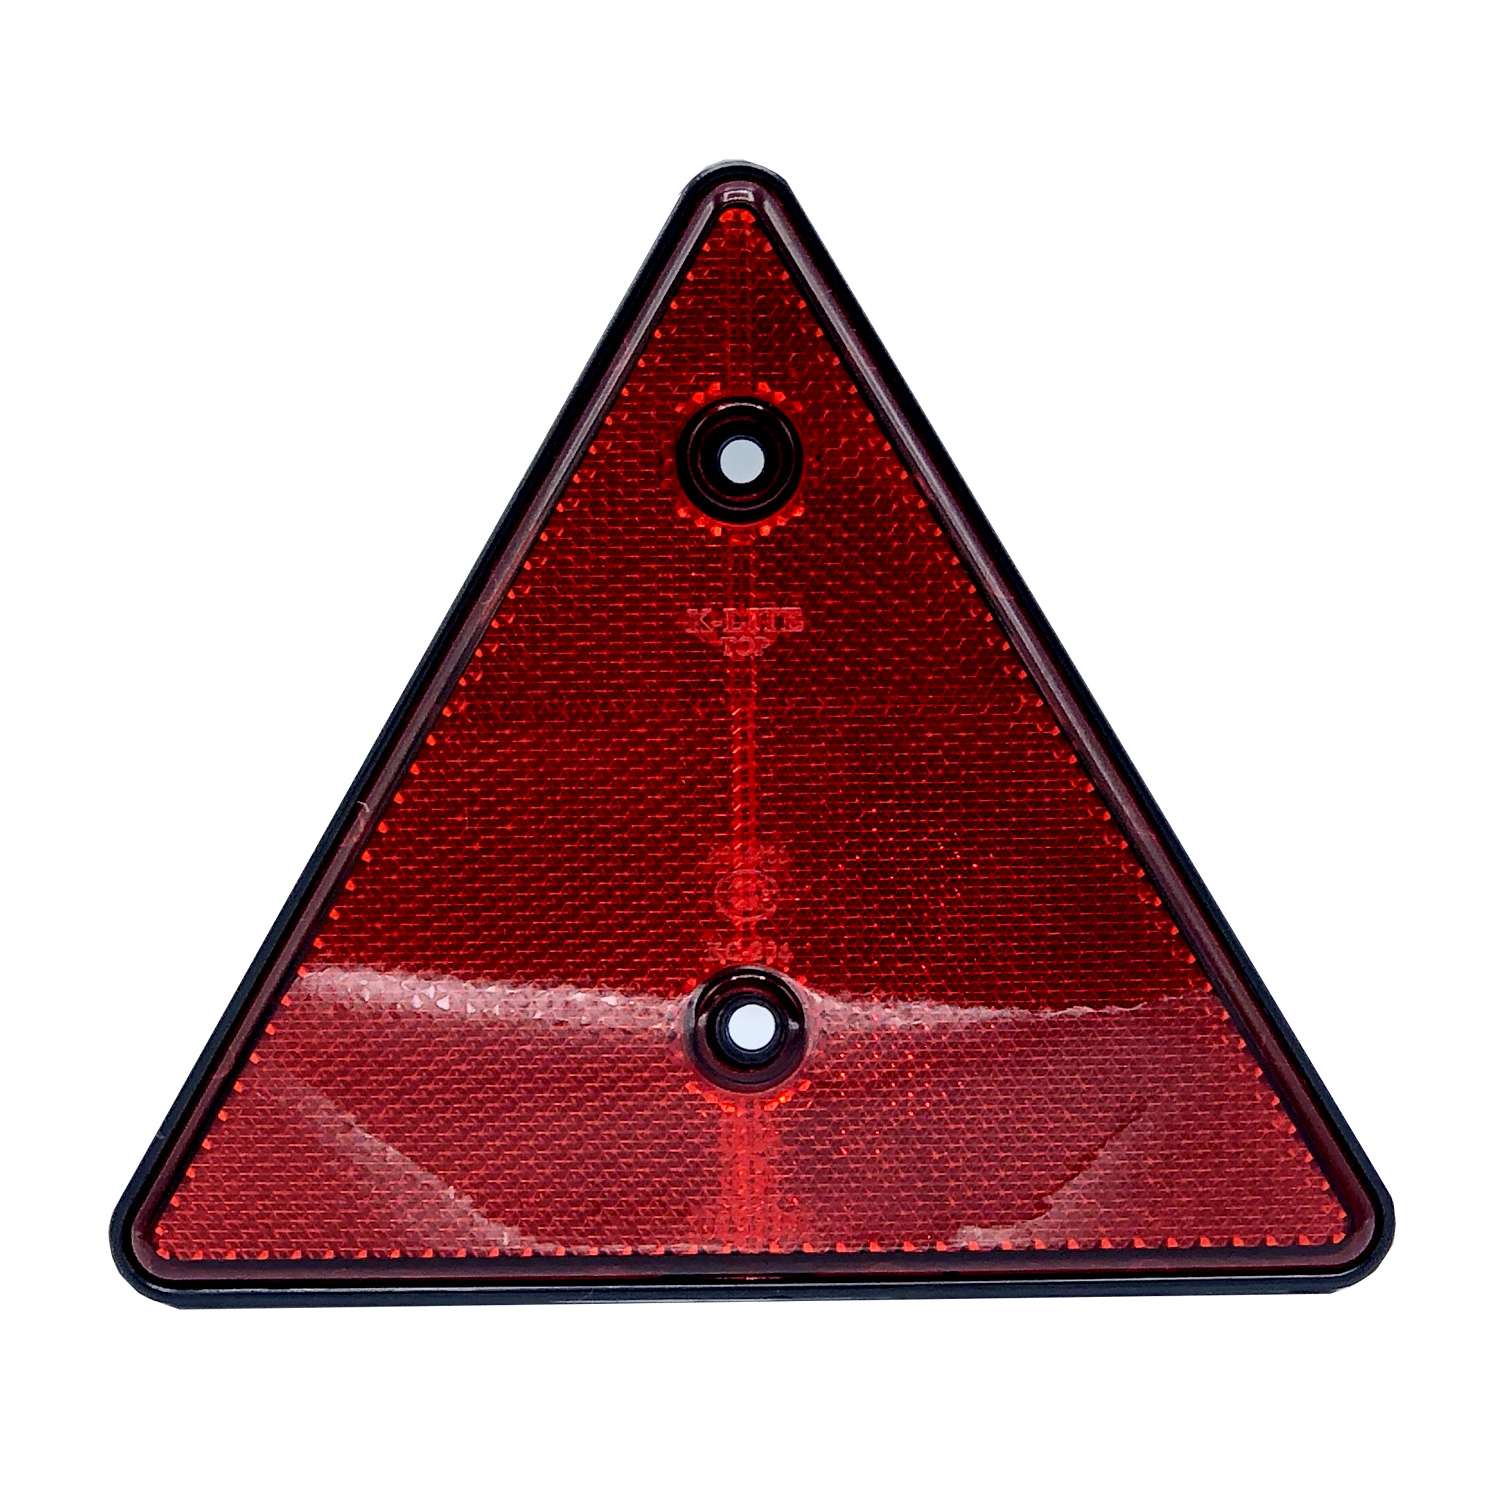 ทับทิมสามเหลี่ยม สีแดง TH2643 R